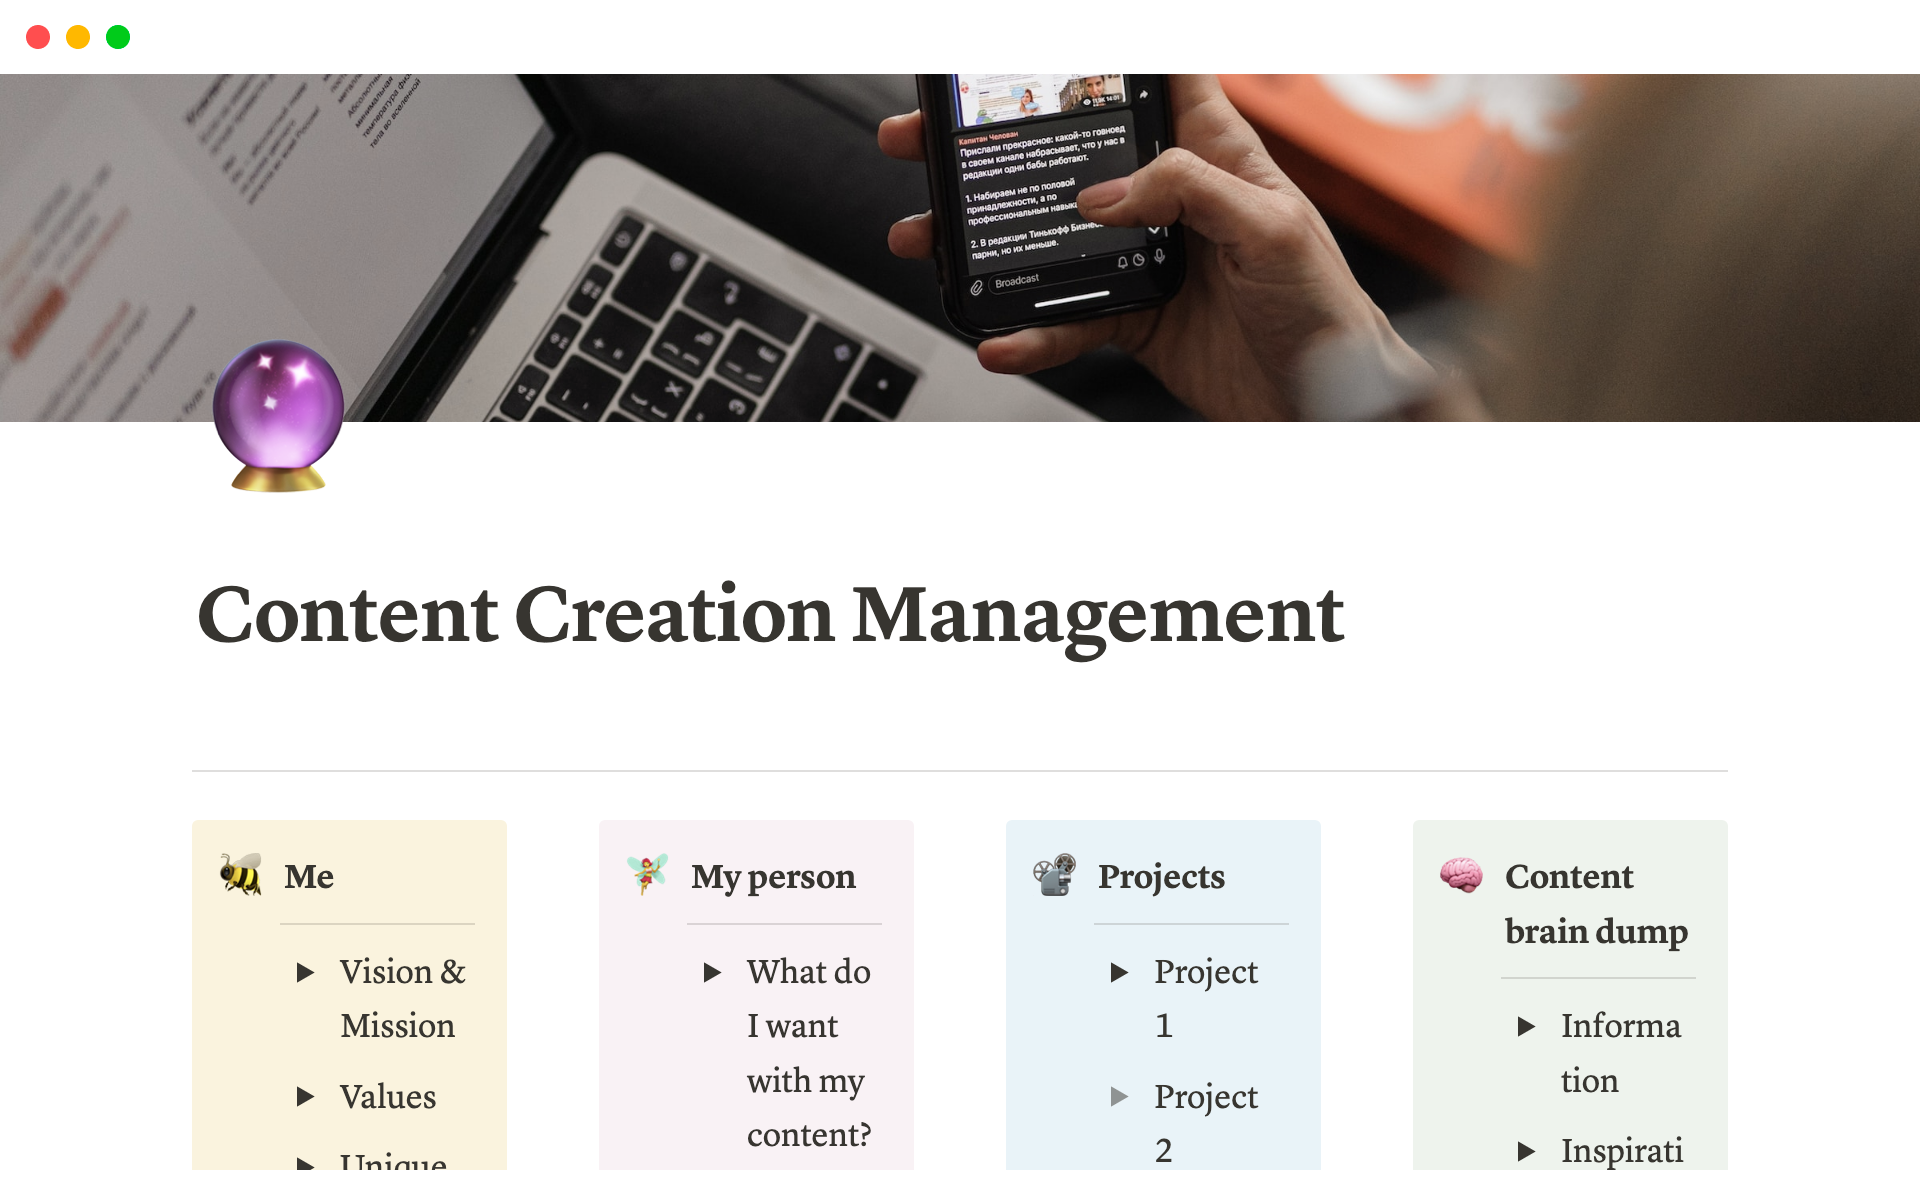 Uma prévia do modelo para Content Creation Management